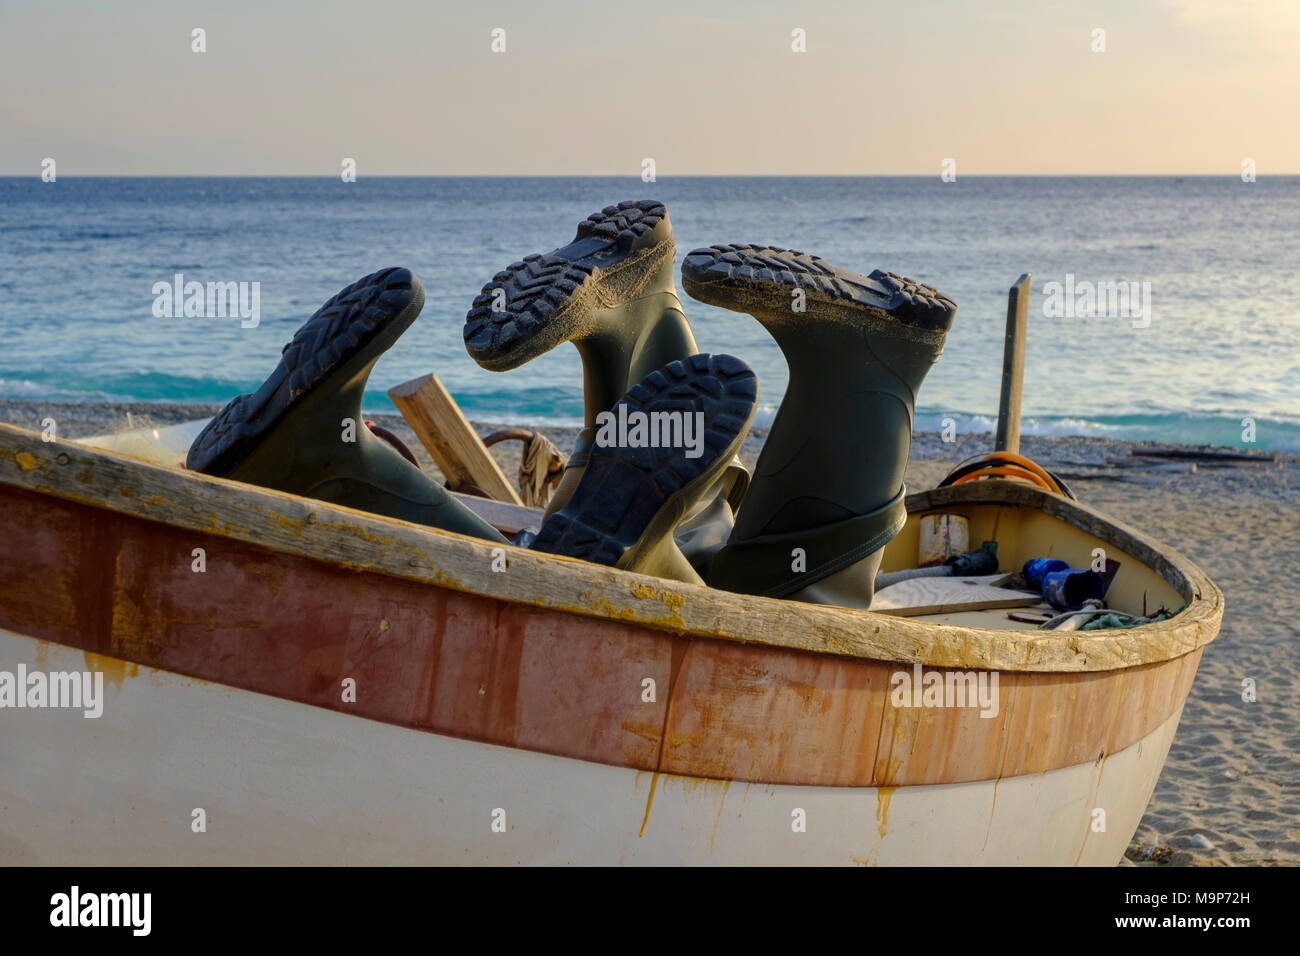 Stivali di gomma in una barca da pesca sulla spiaggia, Noli, la Riviera di Ponente, Liguria, Italia Foto Stock